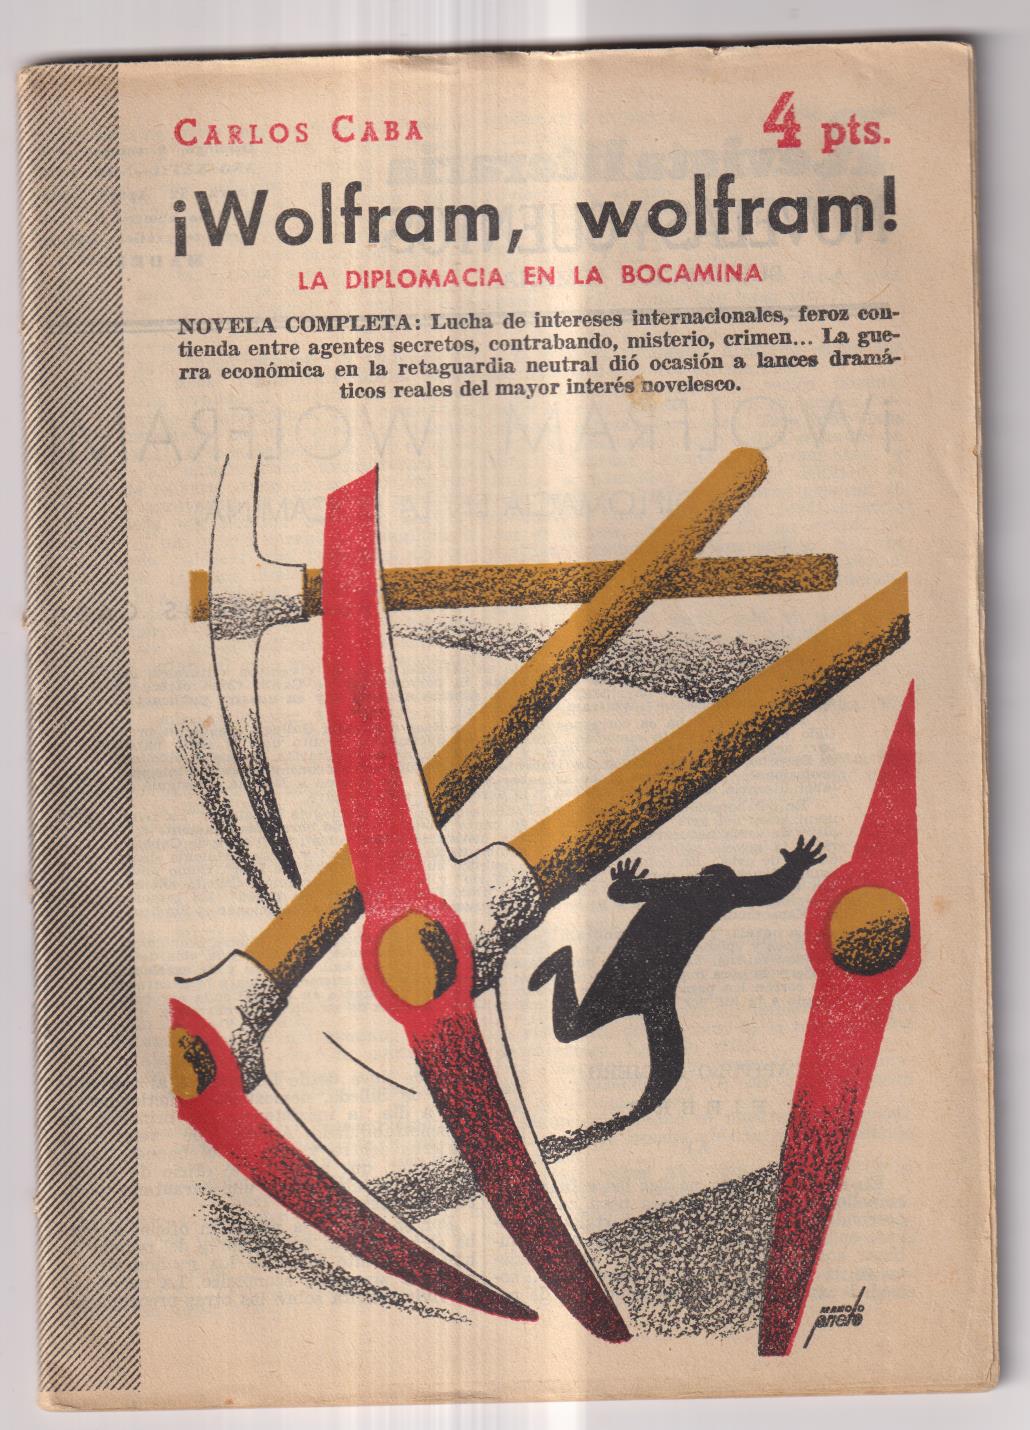 Revista Literaria Novelas y Cuentos nº 1274. ¡Wolfram, Wolfram! Carlos Caba, Año 1955